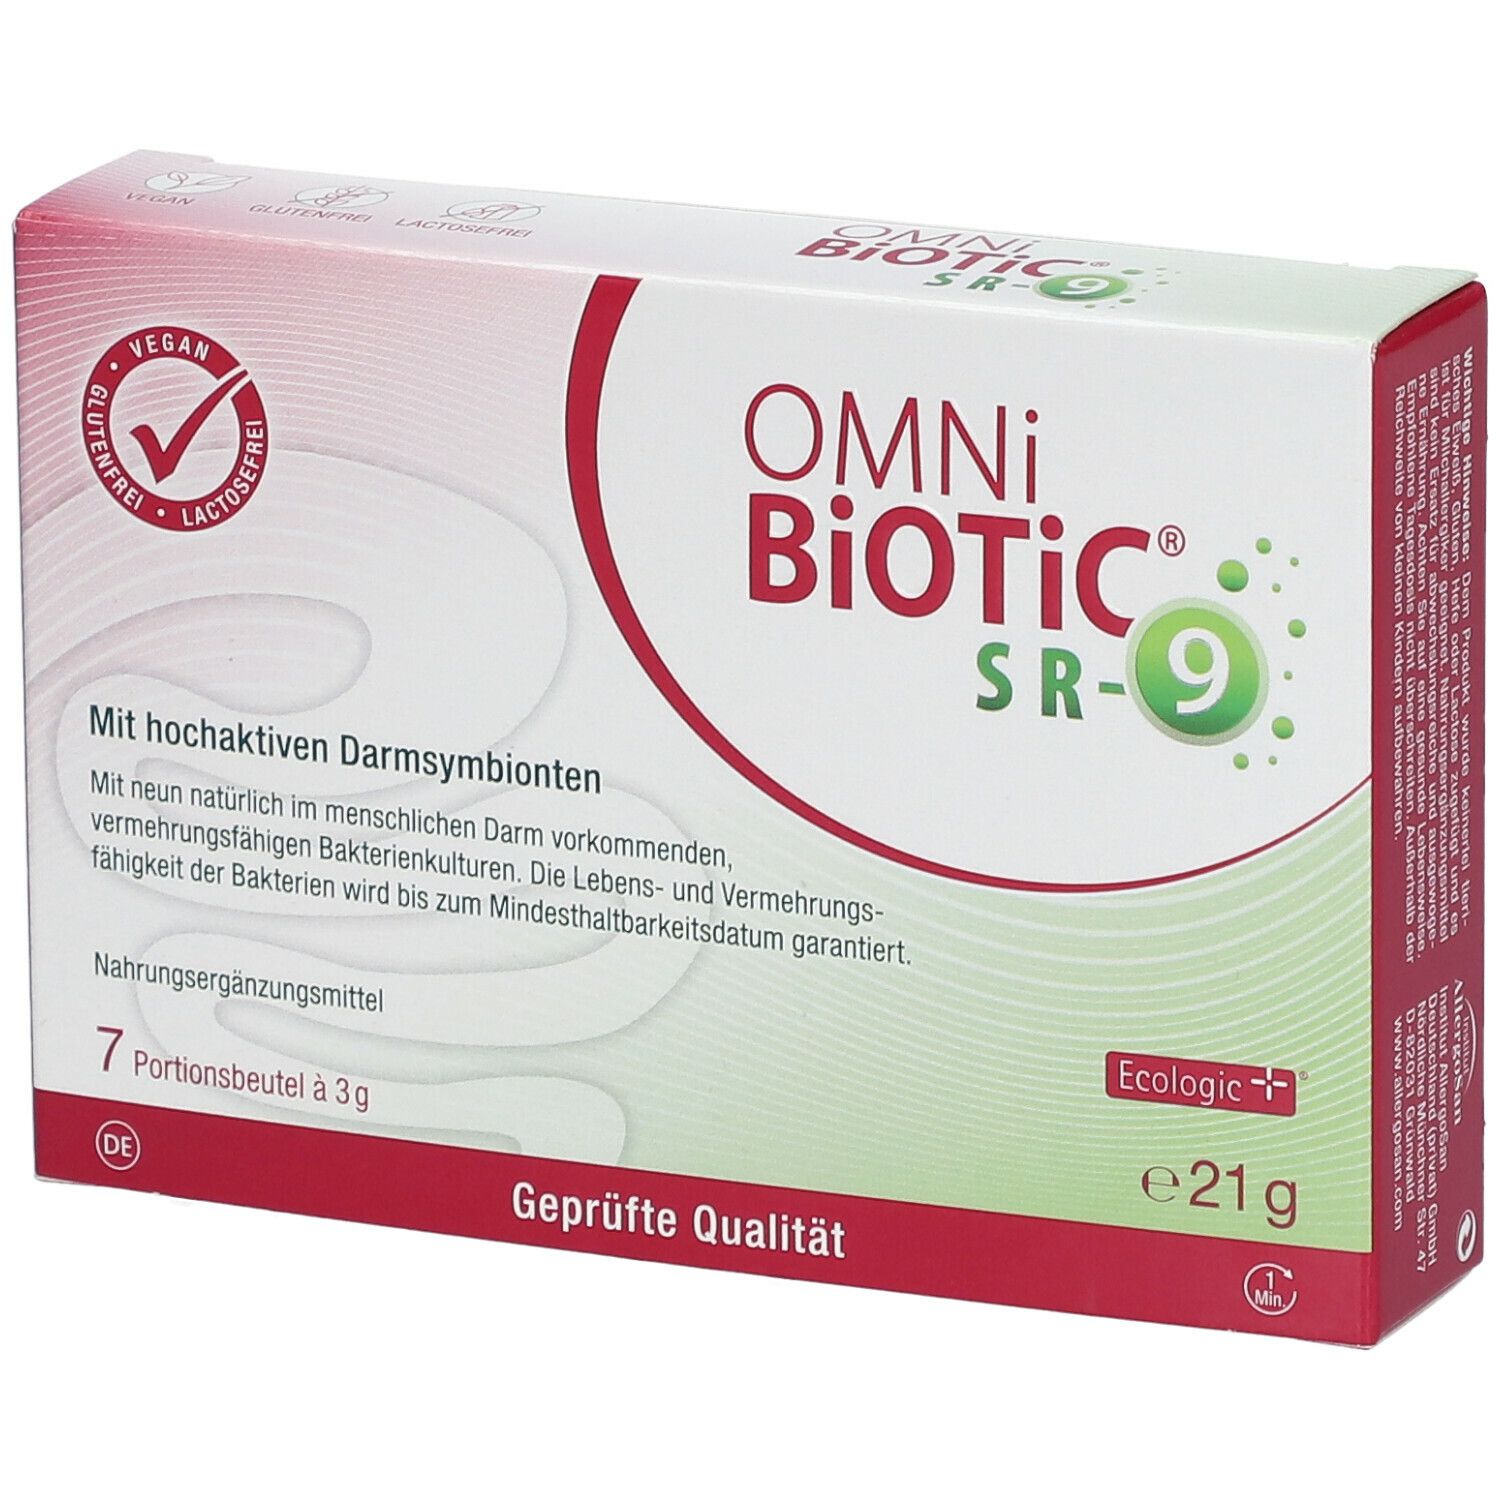 OMNi-BiOTiC® SR-9